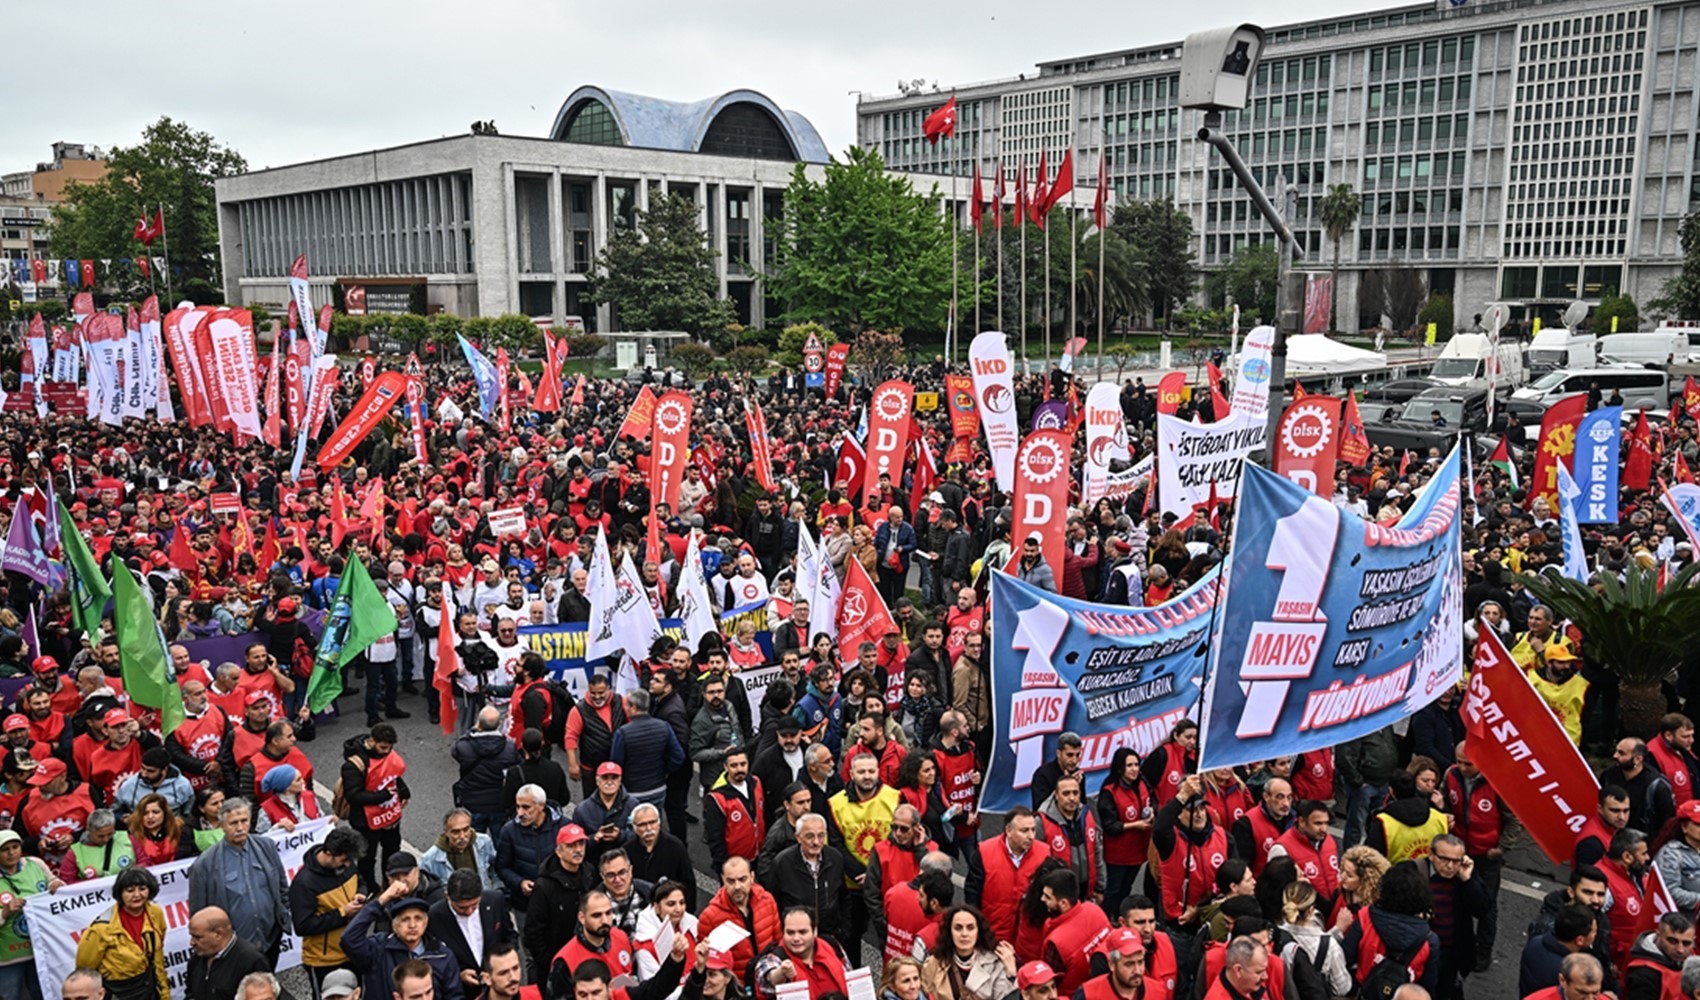 İstanbul'da 1 Mayıs kısıtlamaları kısmi olarak kaldırıldı